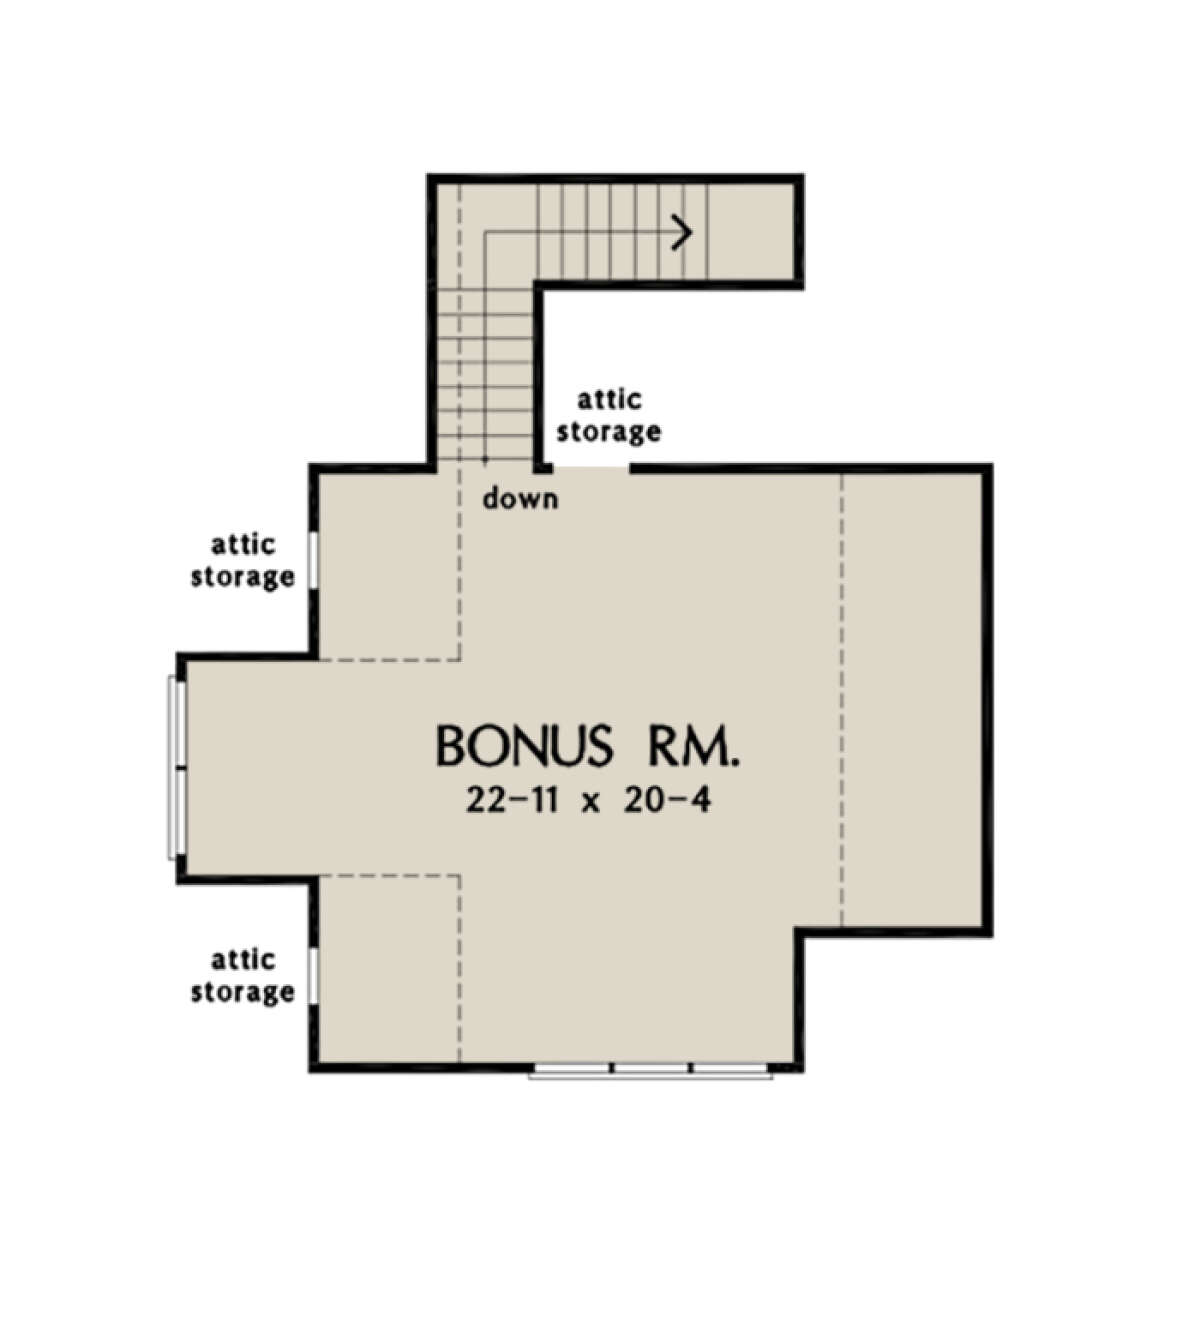 Bonus Room for House Plan #2865-00205